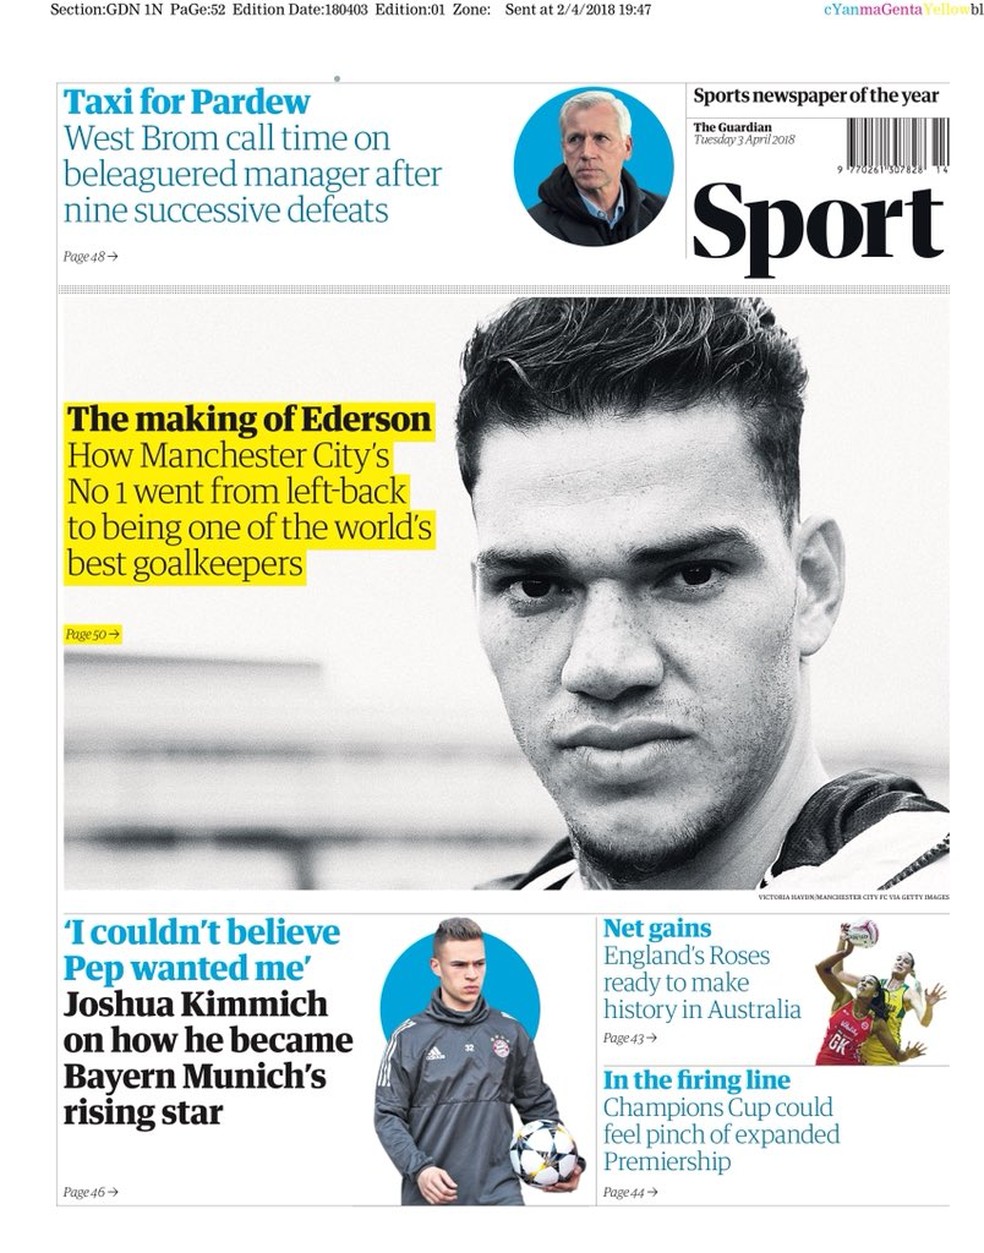 Perfil de Ederson ainda estampa capa do caderno de esportes do Guardian (Foto: Reprodução / The Guardian)